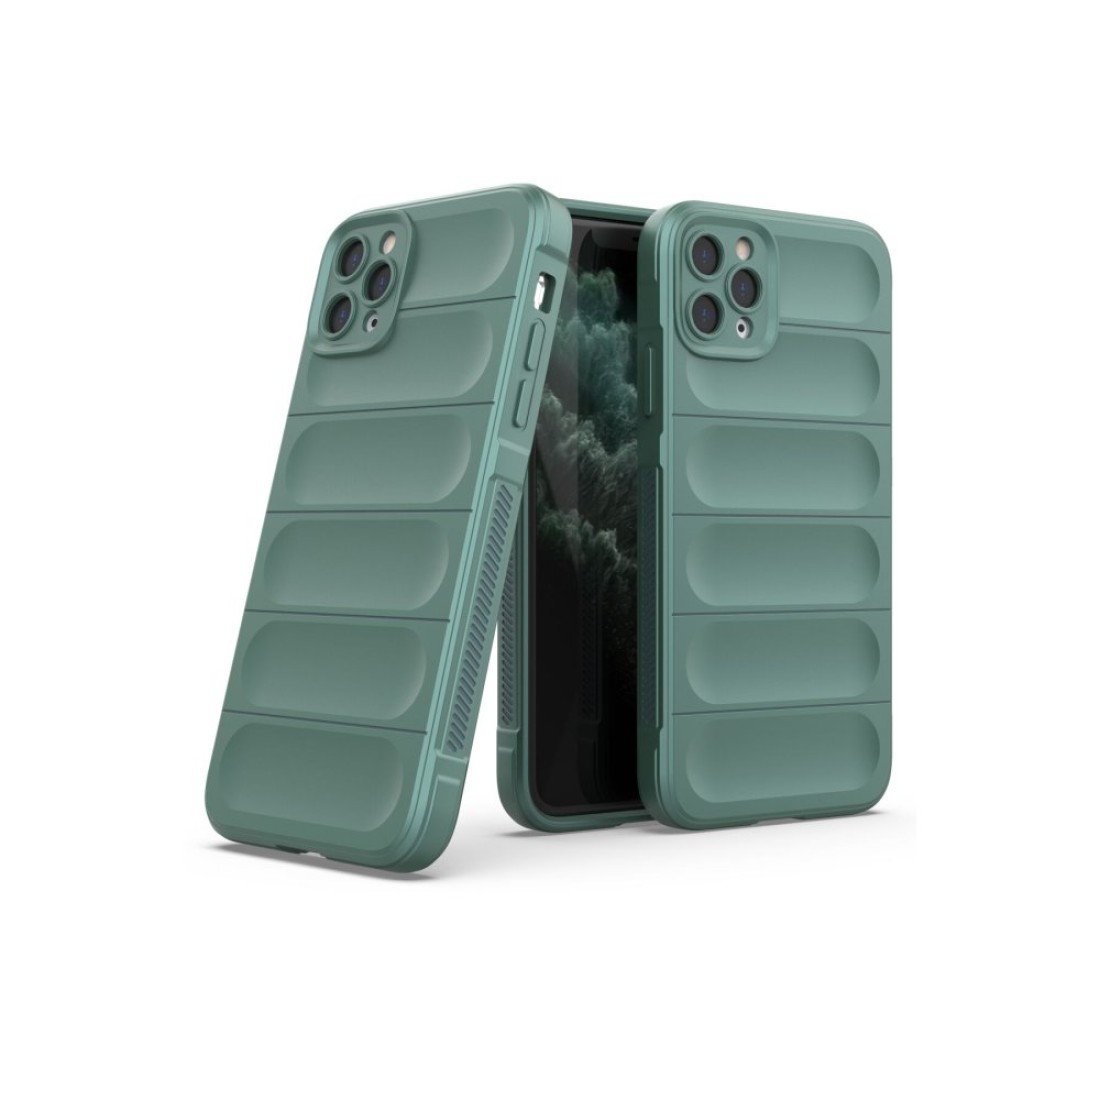 Apple iPhone 11 Pro Max Kılıf Optimum Silikon - Koyu Yeşil